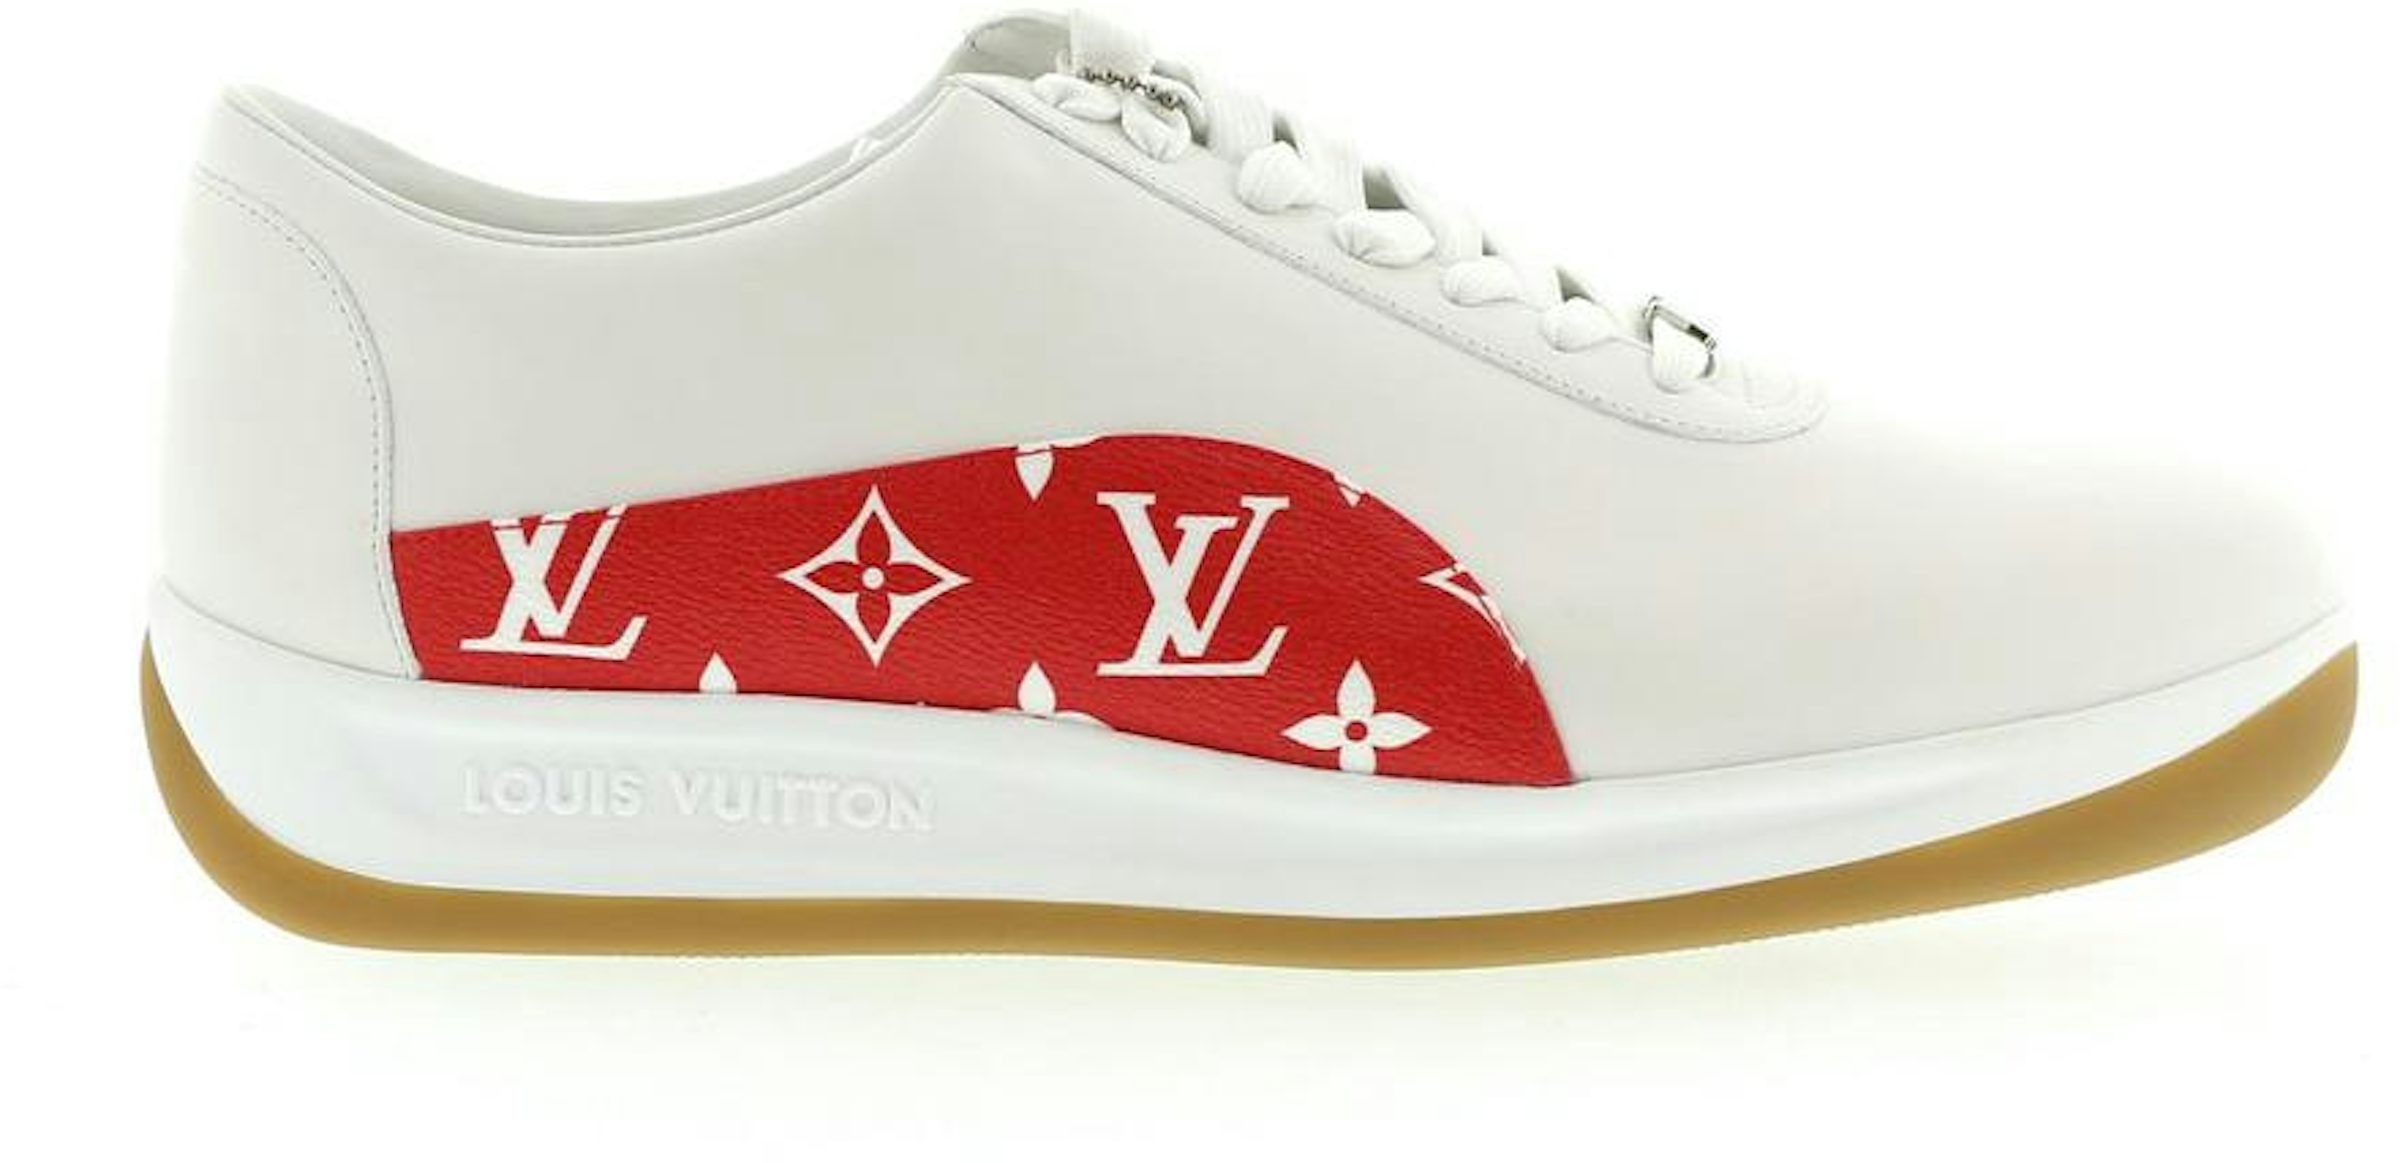 Louis Vuitton X Supreme Vans